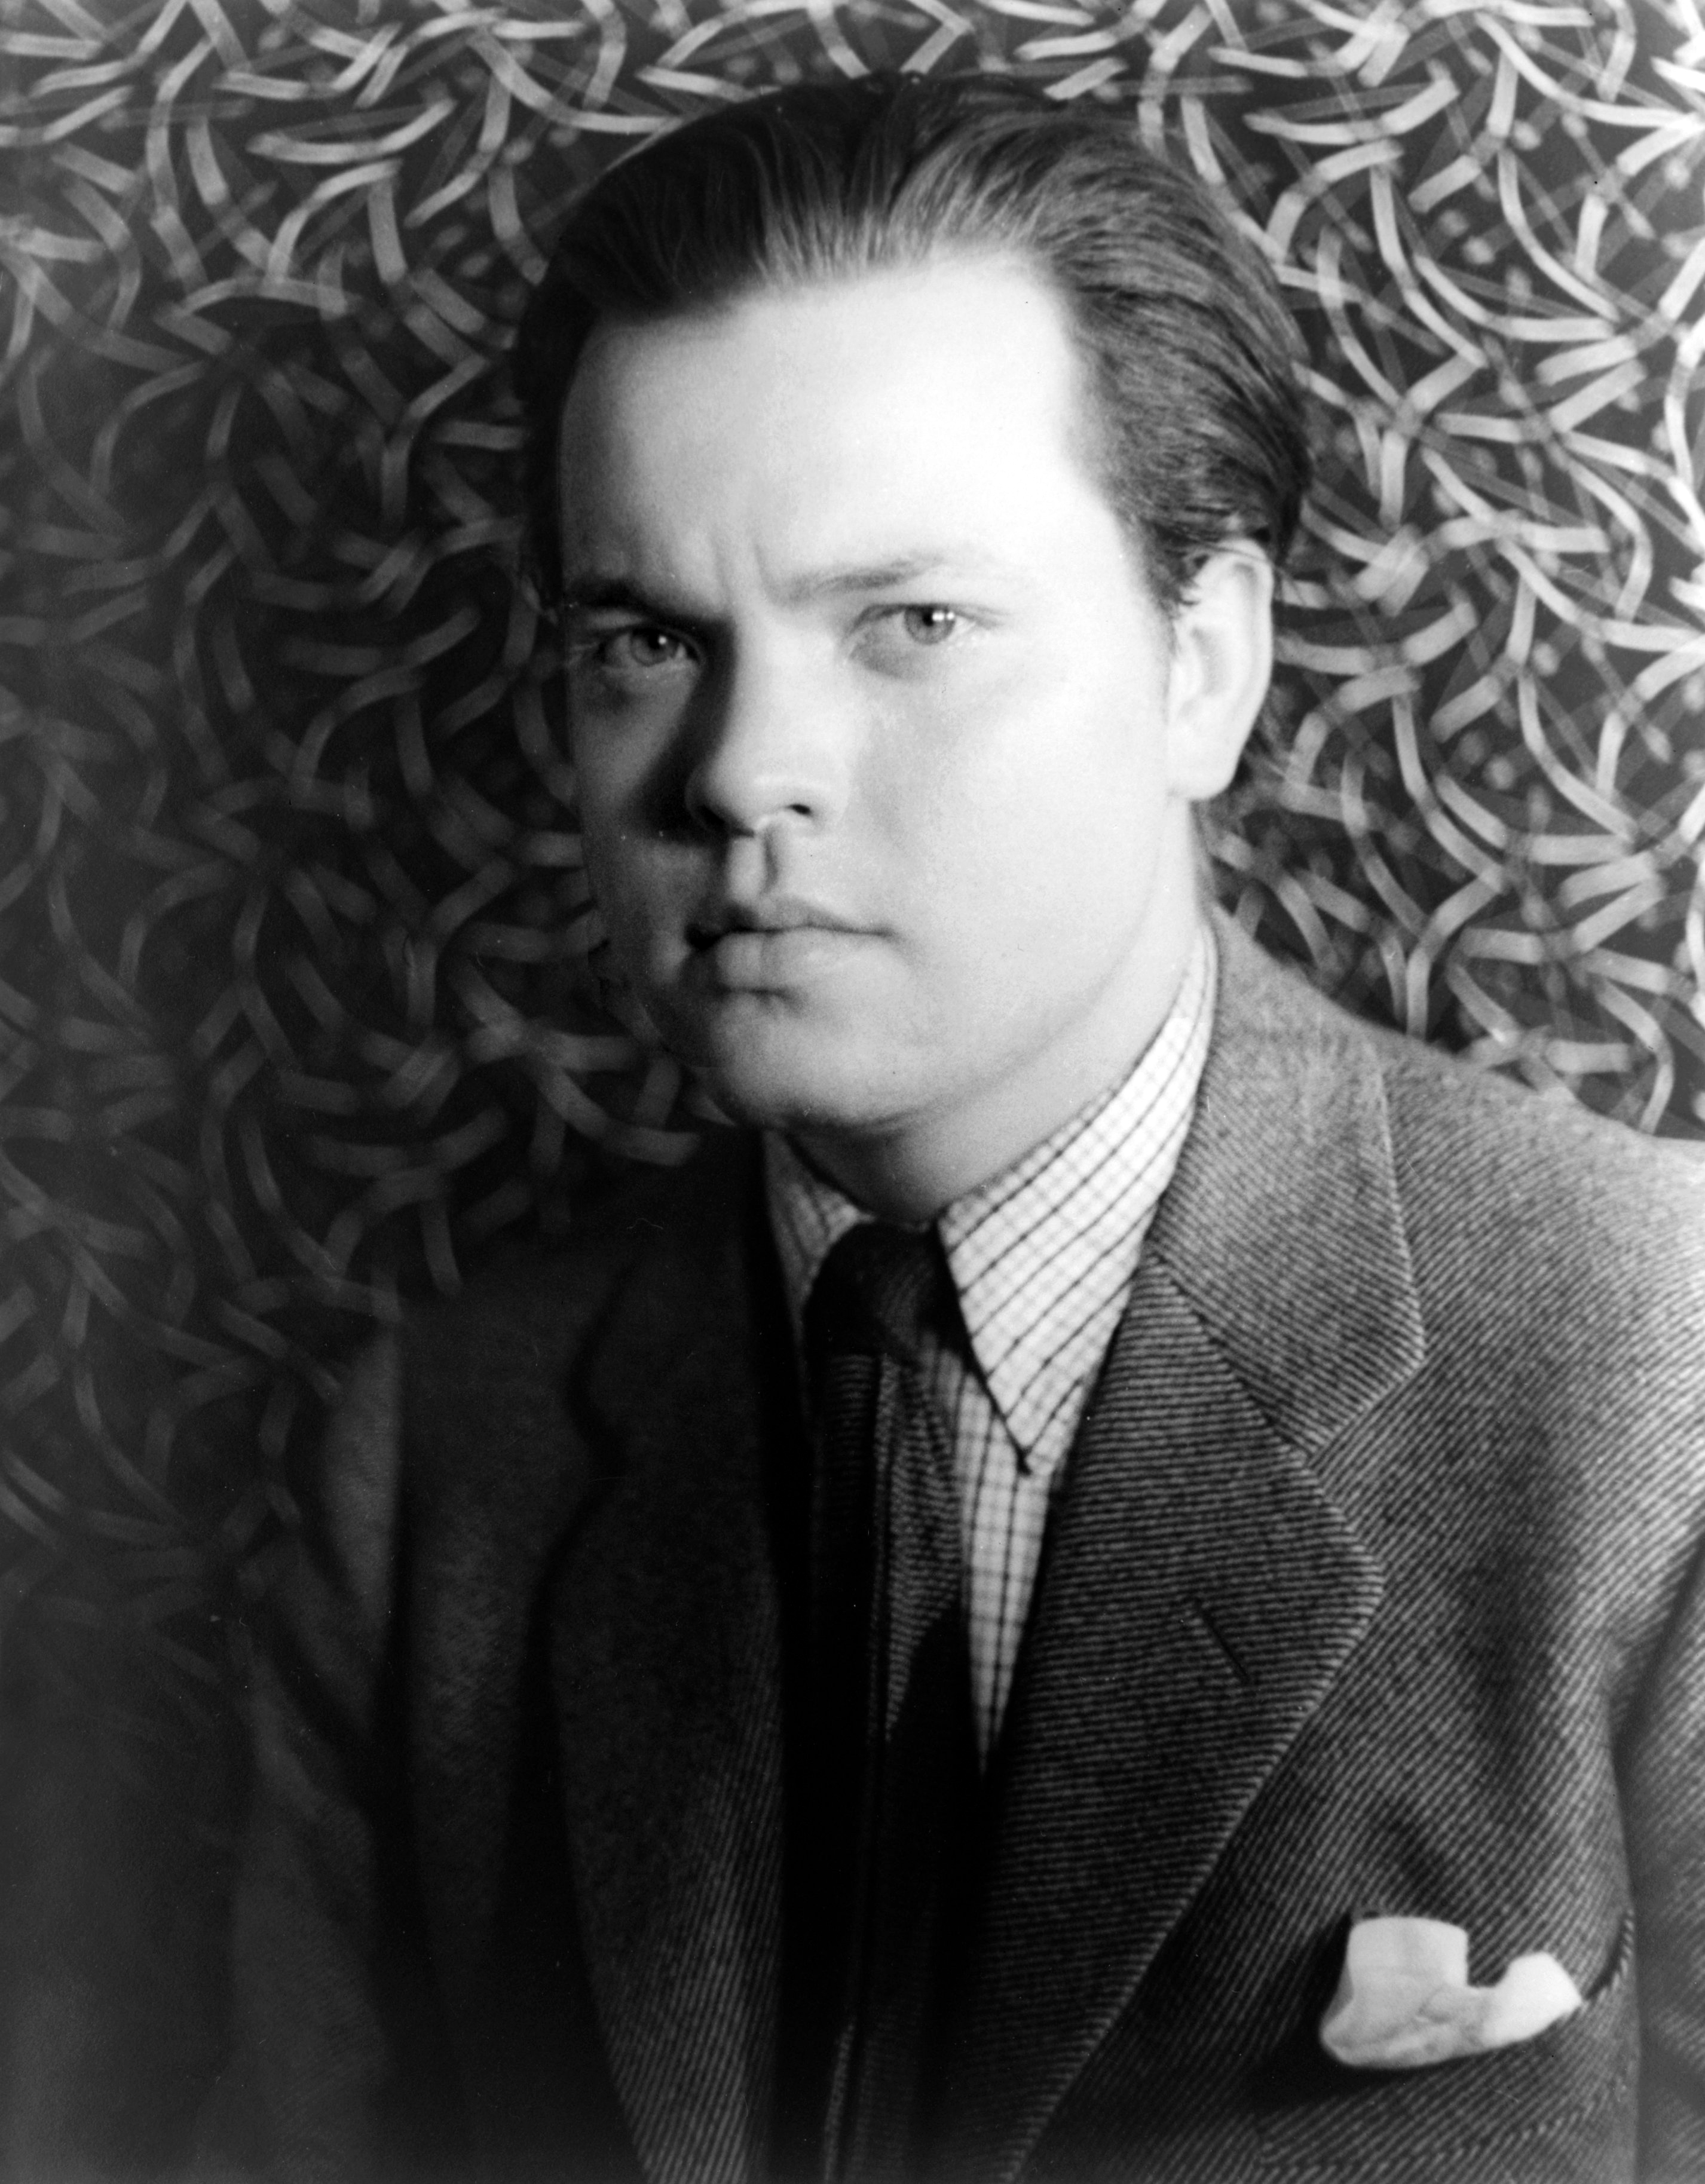 auteur Orson Welles de la citation Nous sommes nés seuls, nous vivons seuls, nous mourons seuls. Ce n'est que par notre amour et notre amitié que nous pouvons créer l'illusion pour le moment que nous ne sommes pas seuls.